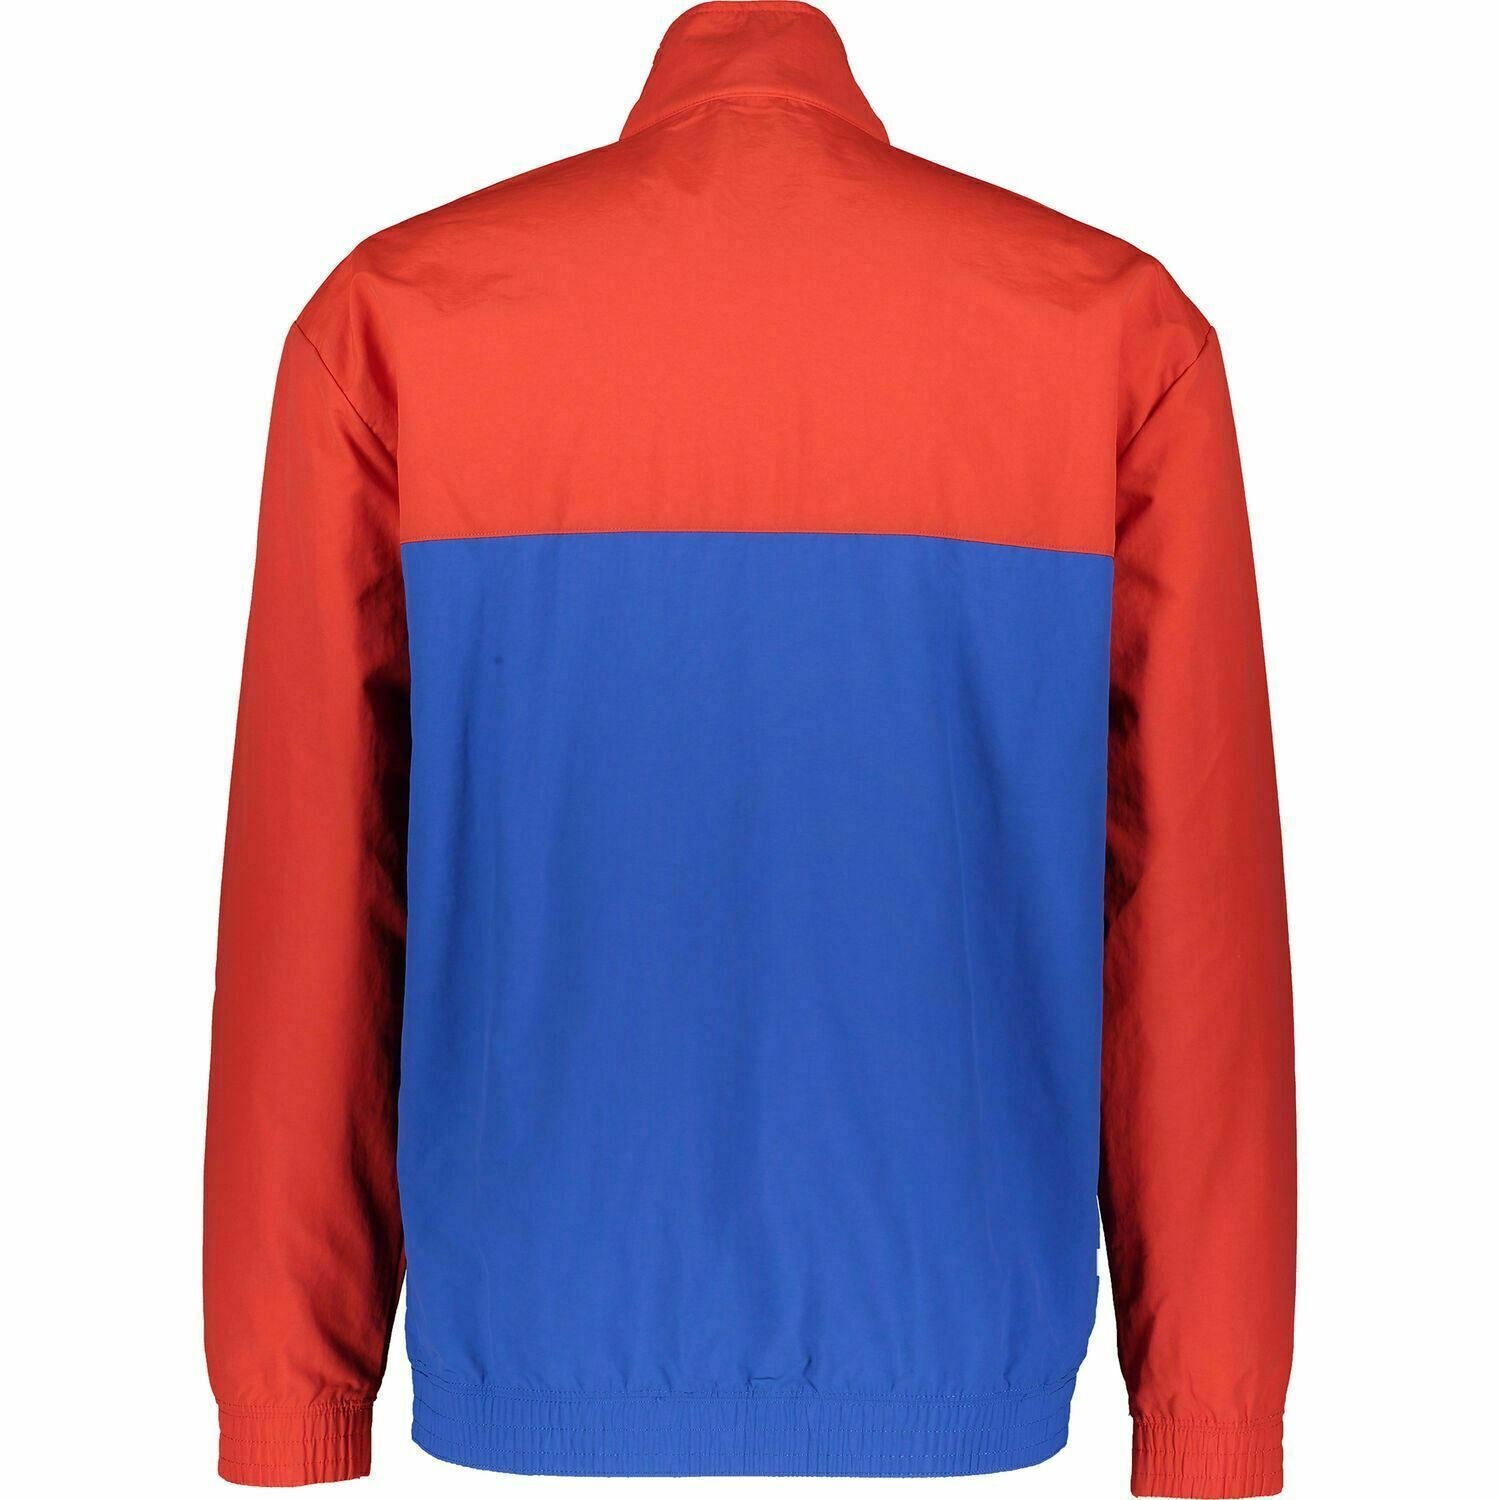 CHAMPION Men's Zipped Colour Block Jacket, Red & Blue, size M